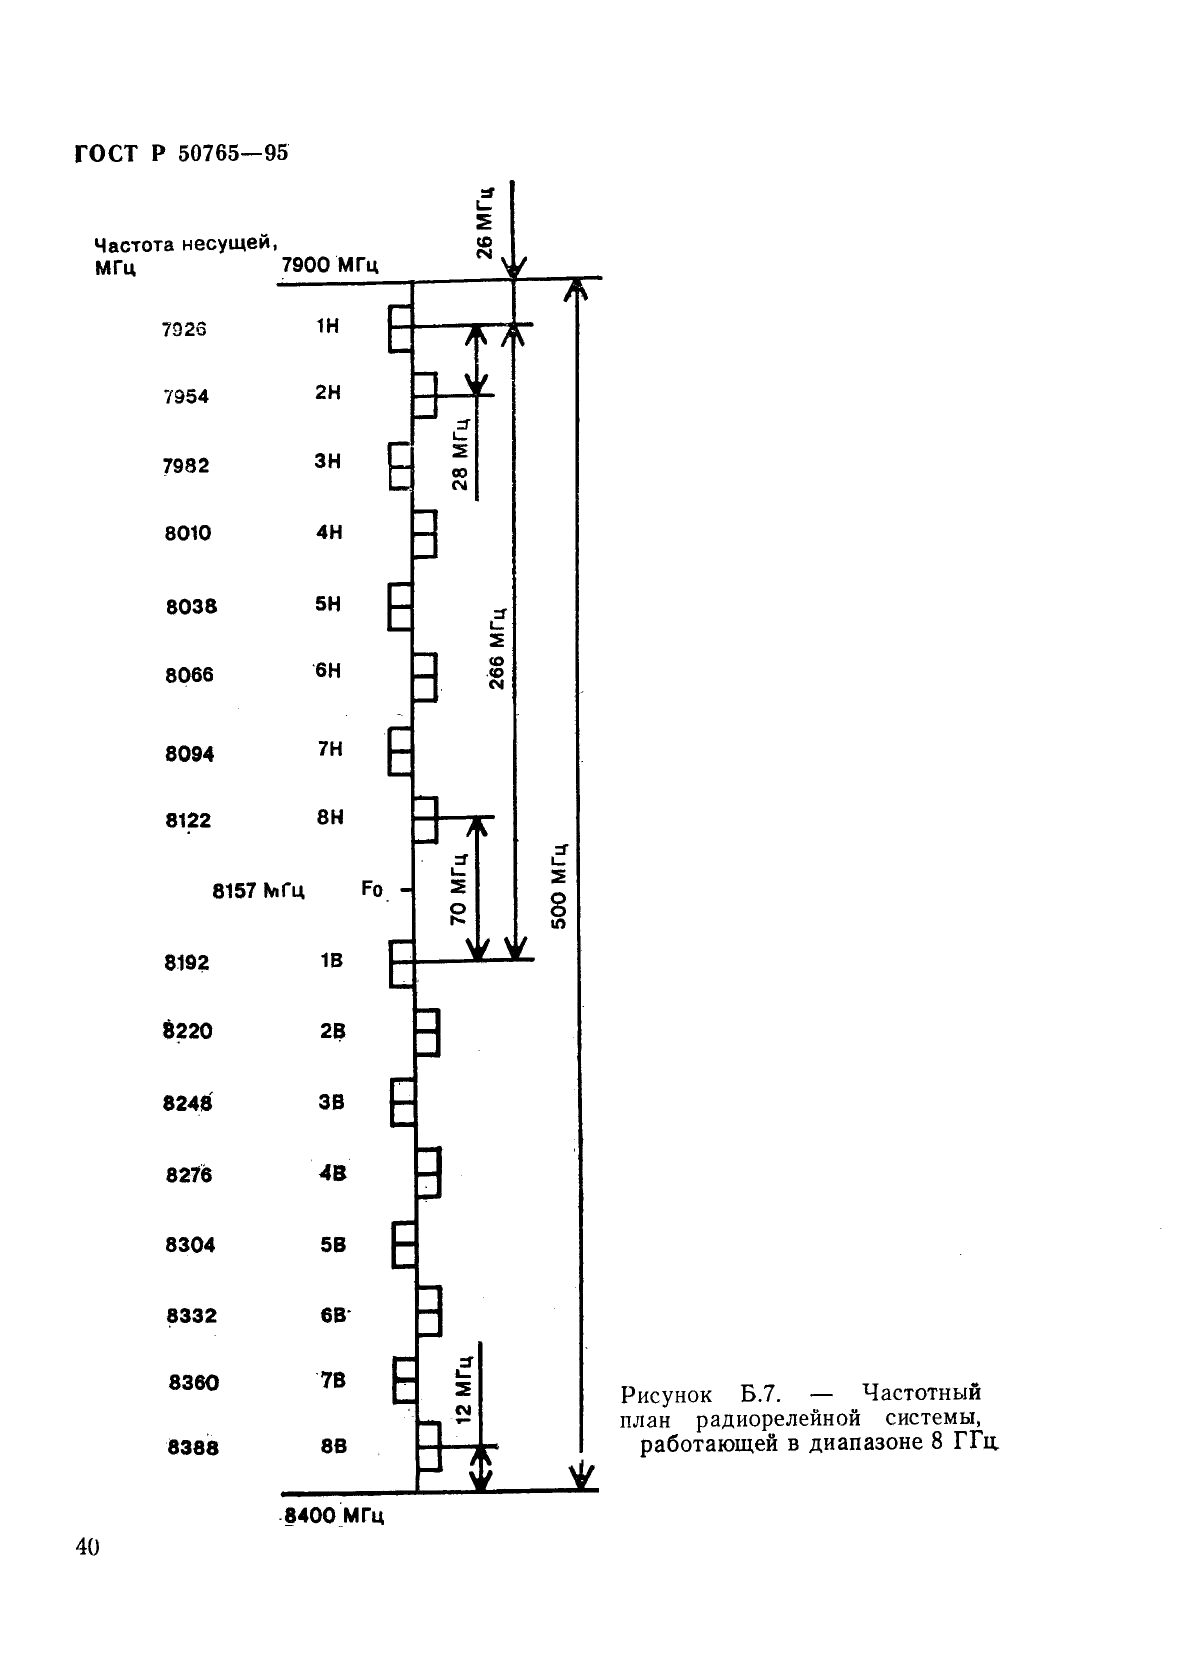 ГОСТ Р 50765-95 Аппаратура радиорелейная. Классификация. Основные параметры цепей стыка (фото 43 из 62)